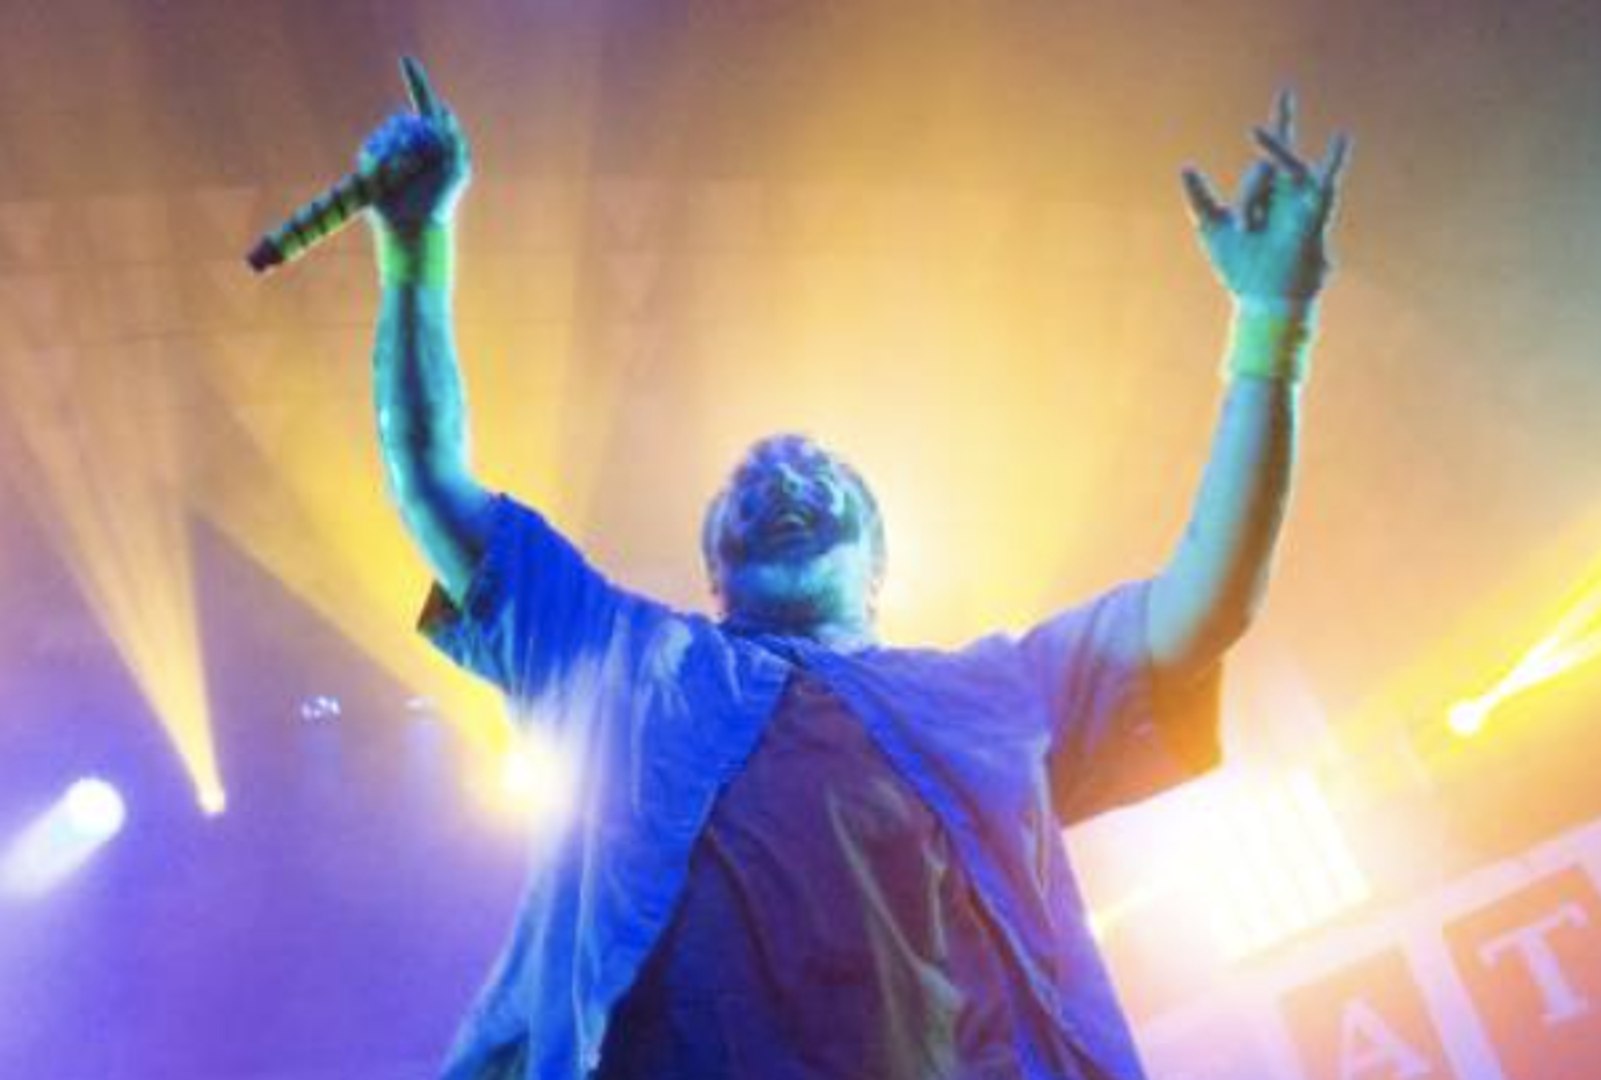 Insane Clown Posse Announces Farewell Tour Due to Heart Failure